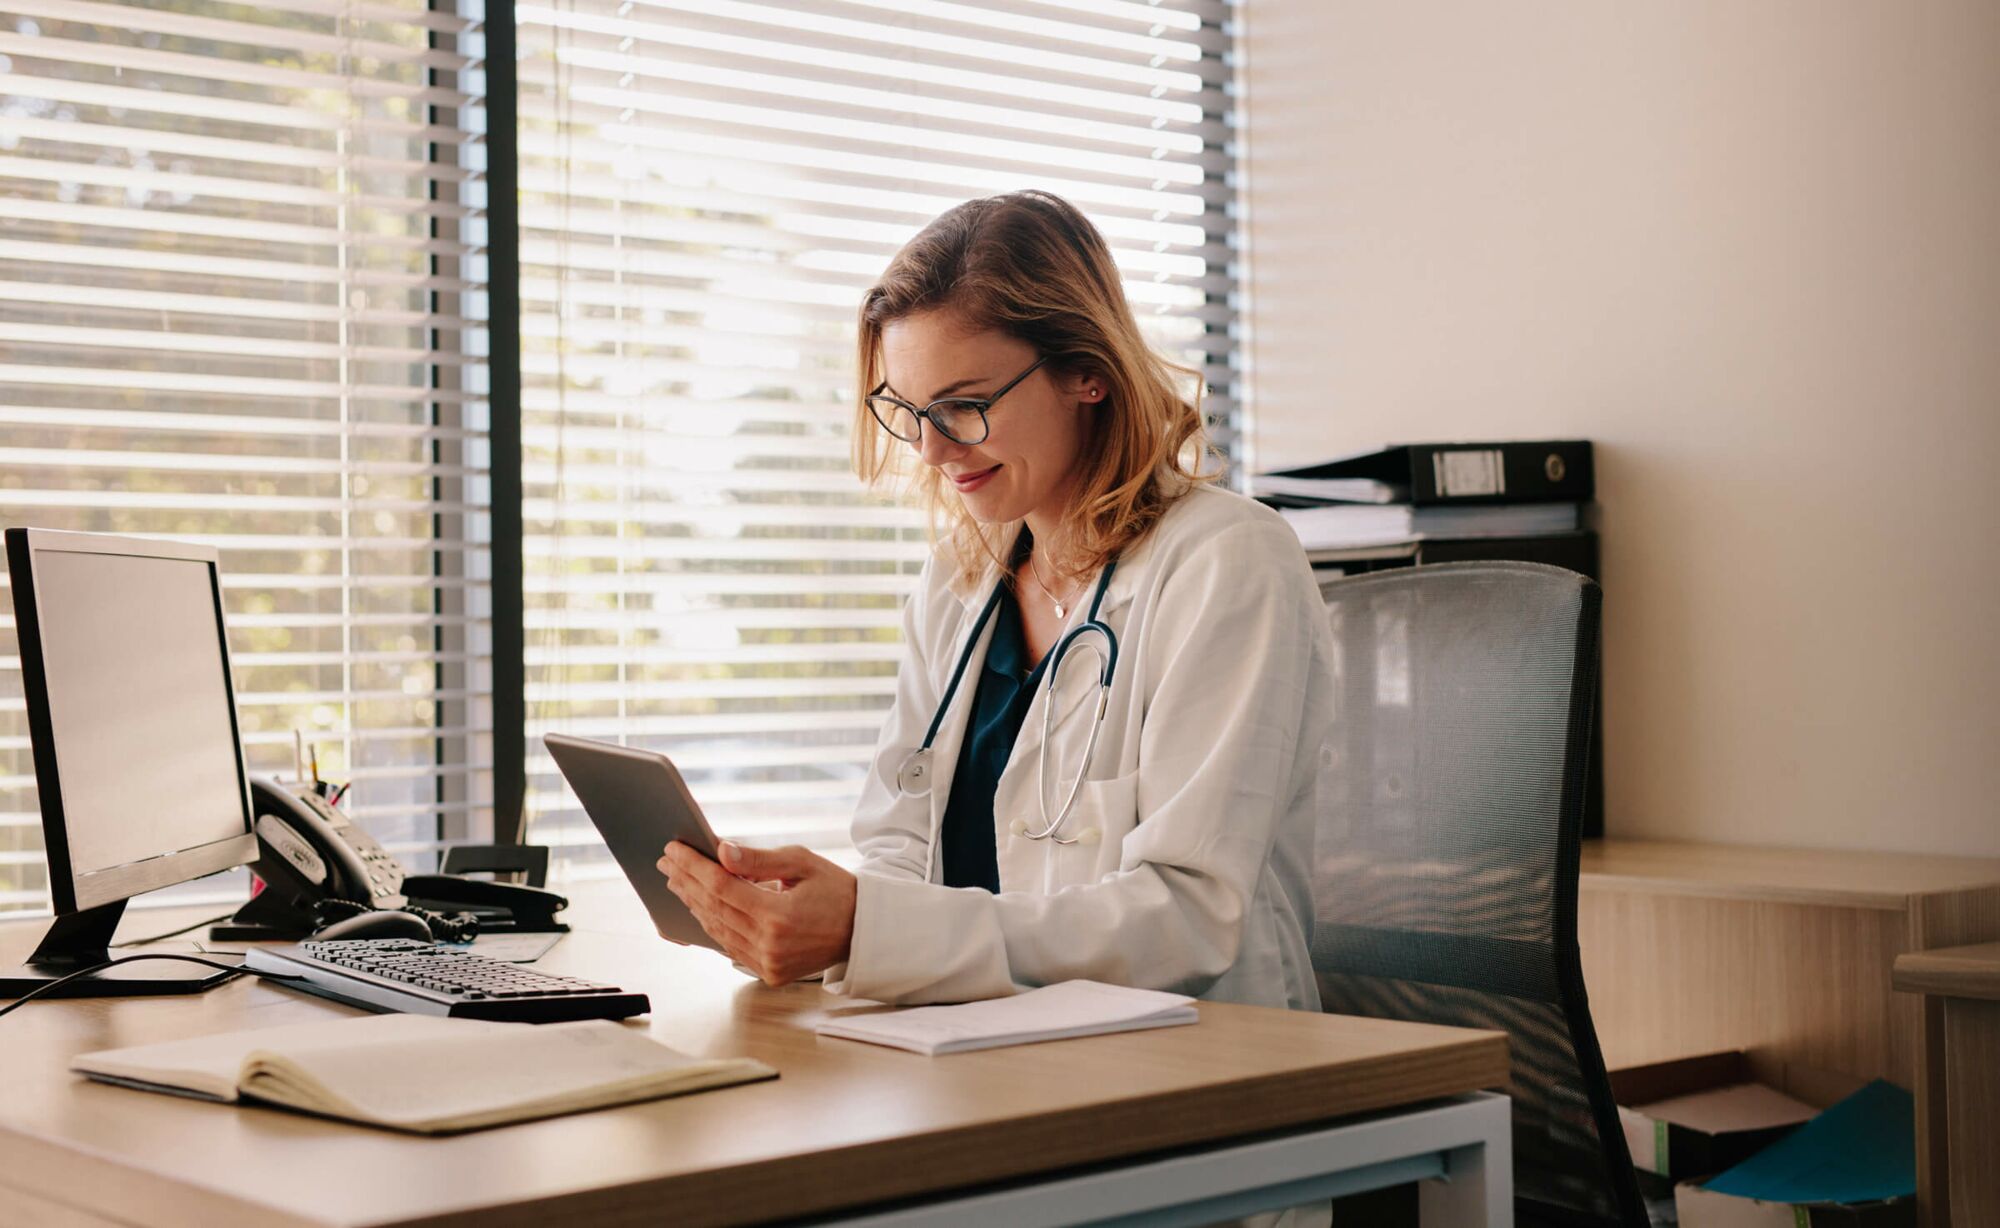 Eine junge blonde Ärztin mit Brille und Stethoskop um den Hals sitzt an einem Schreibtisch und schaut zufrieden auf das Tablet n ihrer Hand.